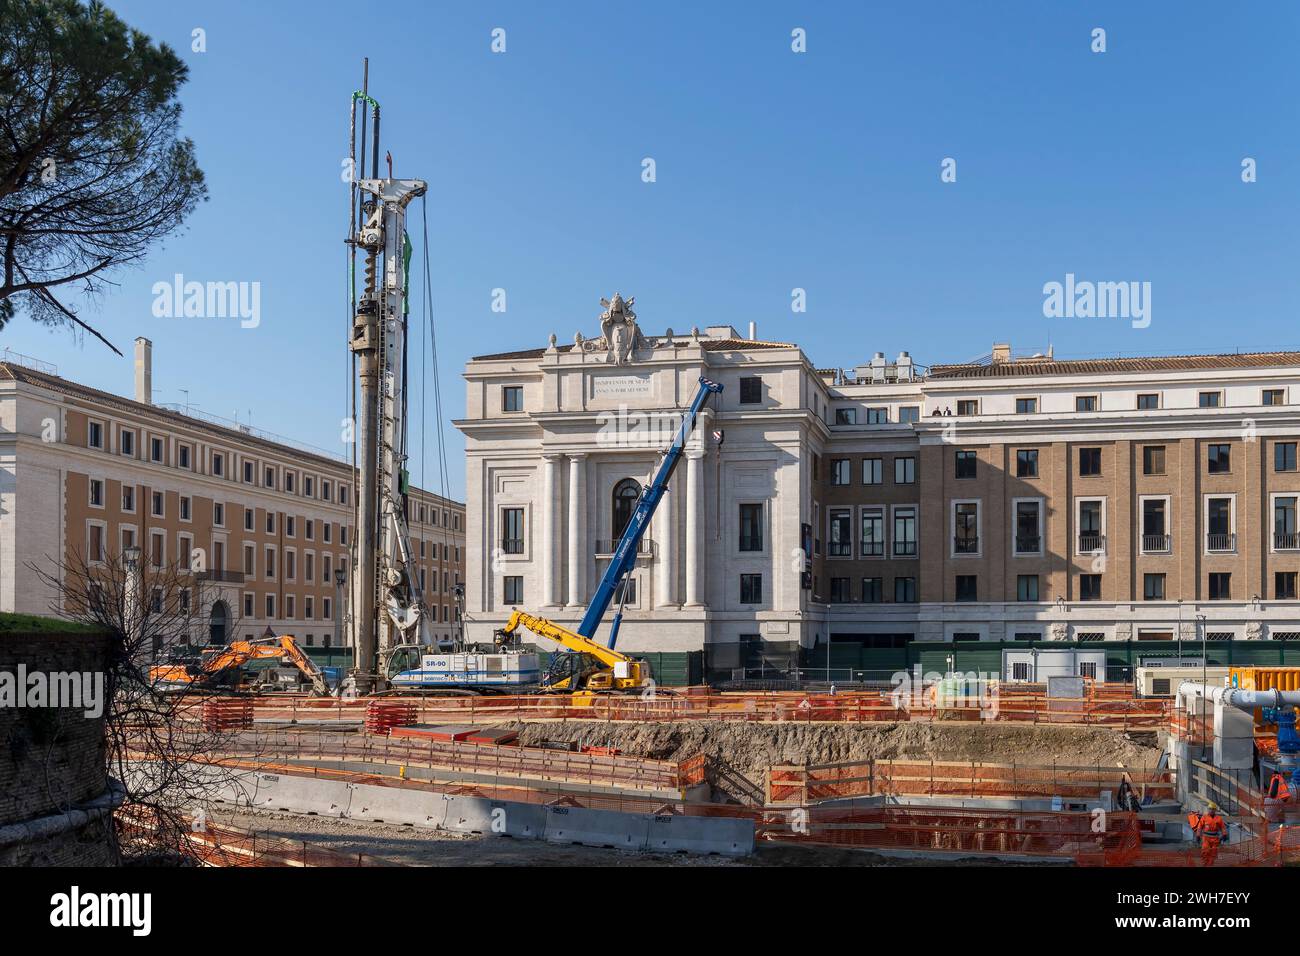 Rom verwandelt sich zum Jubiläum 2025. Baustelle, Bauarbeiten für die Unterführung der Piazza Pia. Rom, Italien, Europa, Europäische Union, EU Stockfoto